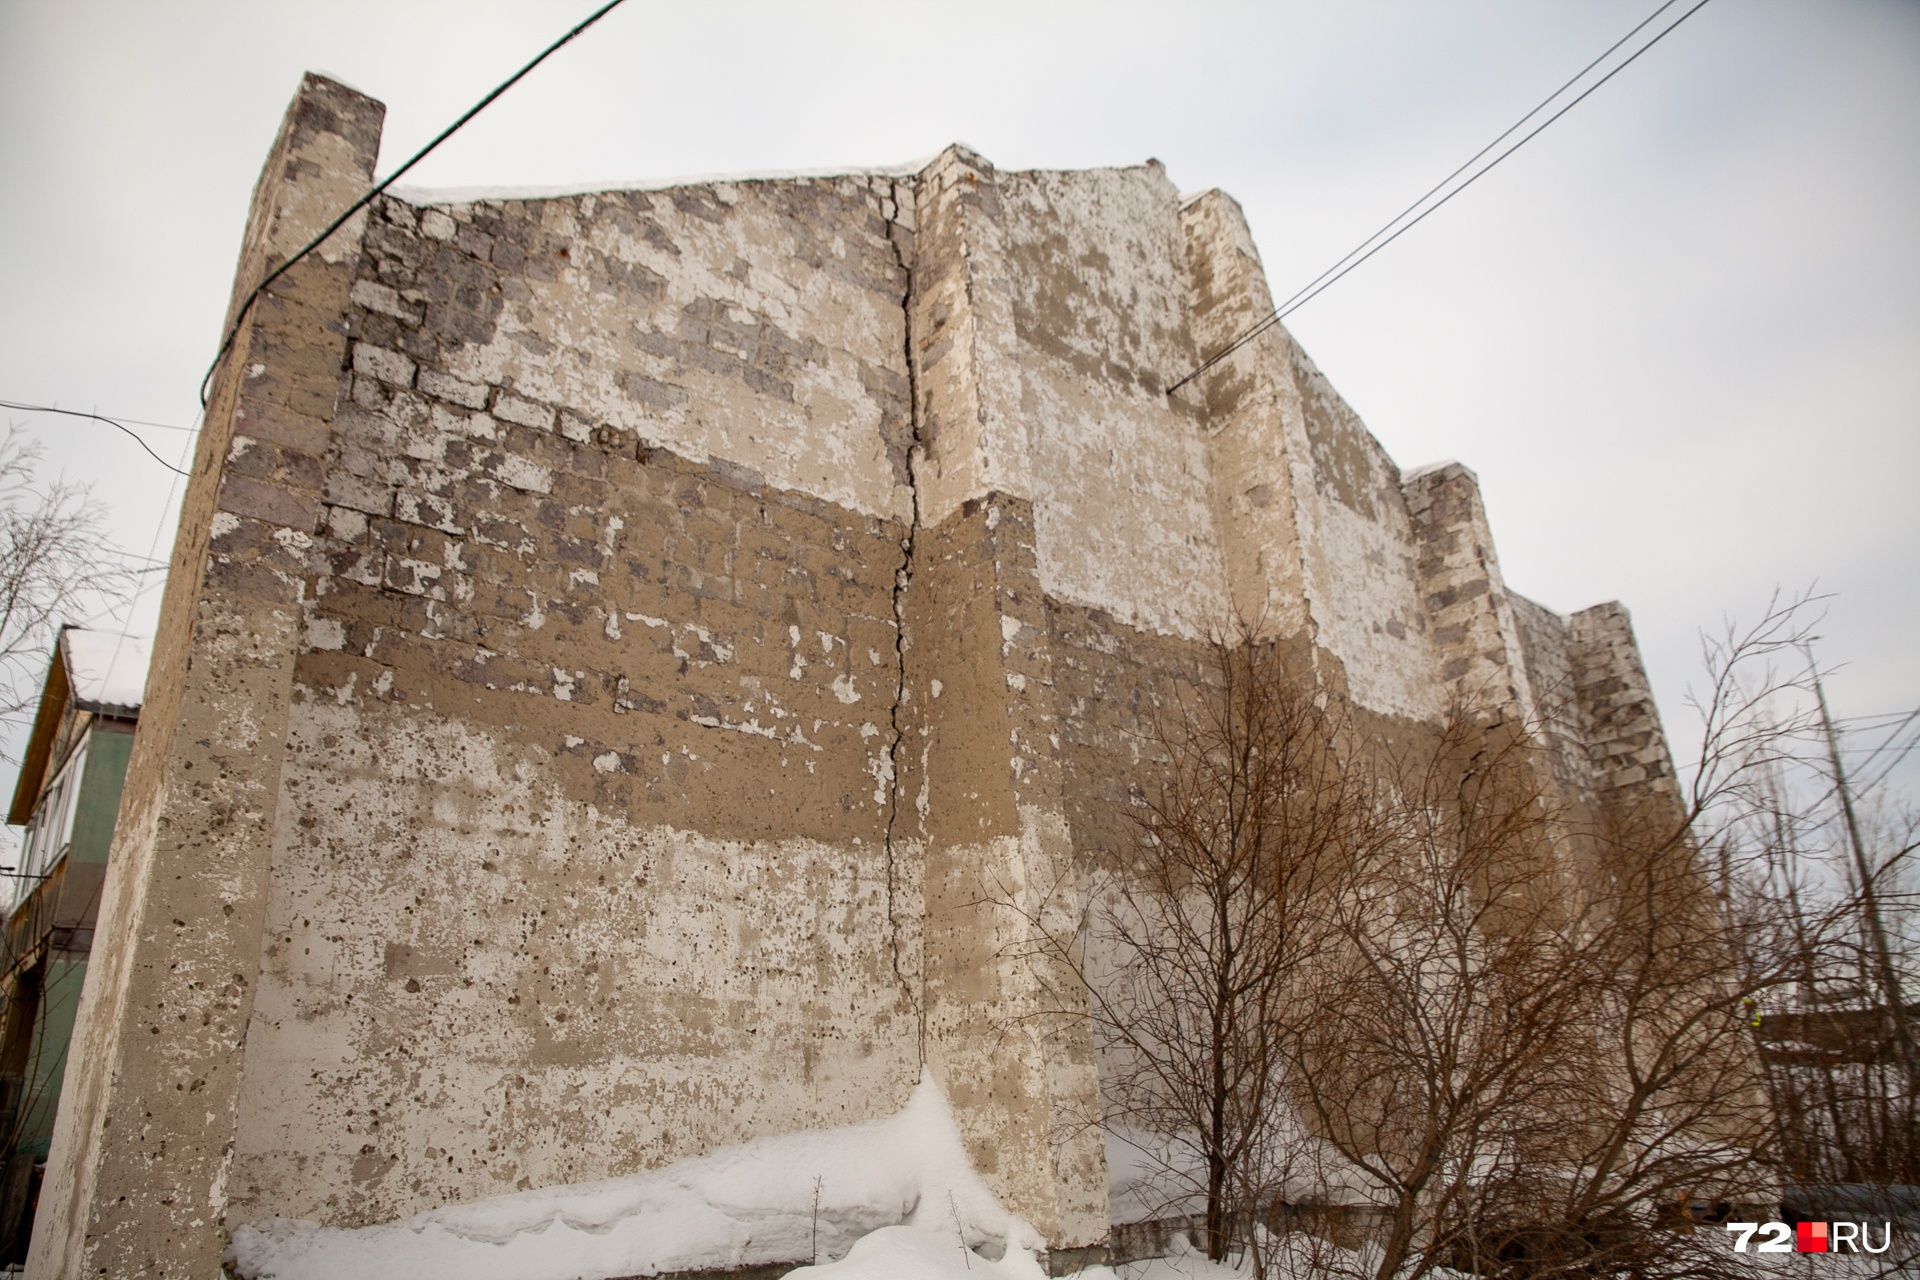 Около одного из сталинских бараков мы находим вот такую страшную стену. Причем стоит она отдельно от дома